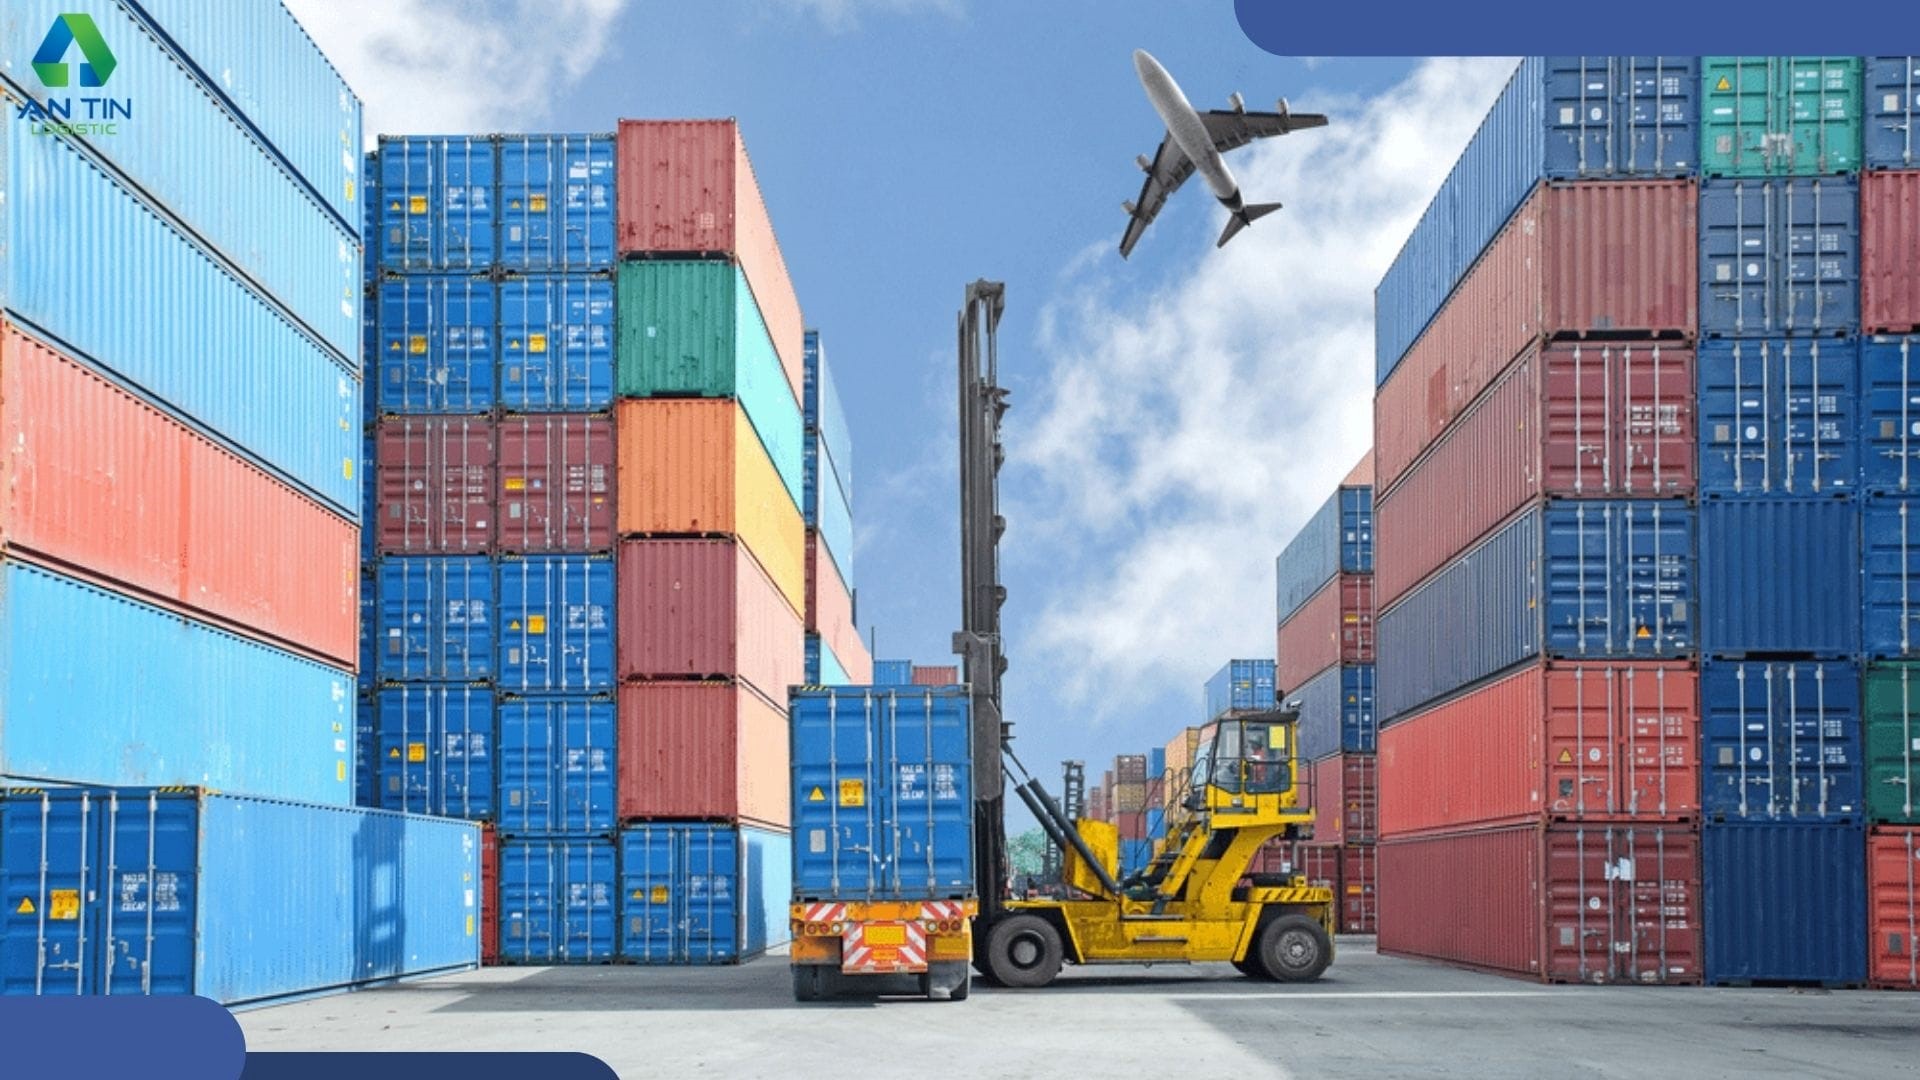 Quy trình và thủ tục hải quan cho hàng hóa xuất nhập khẩu tại chỗ